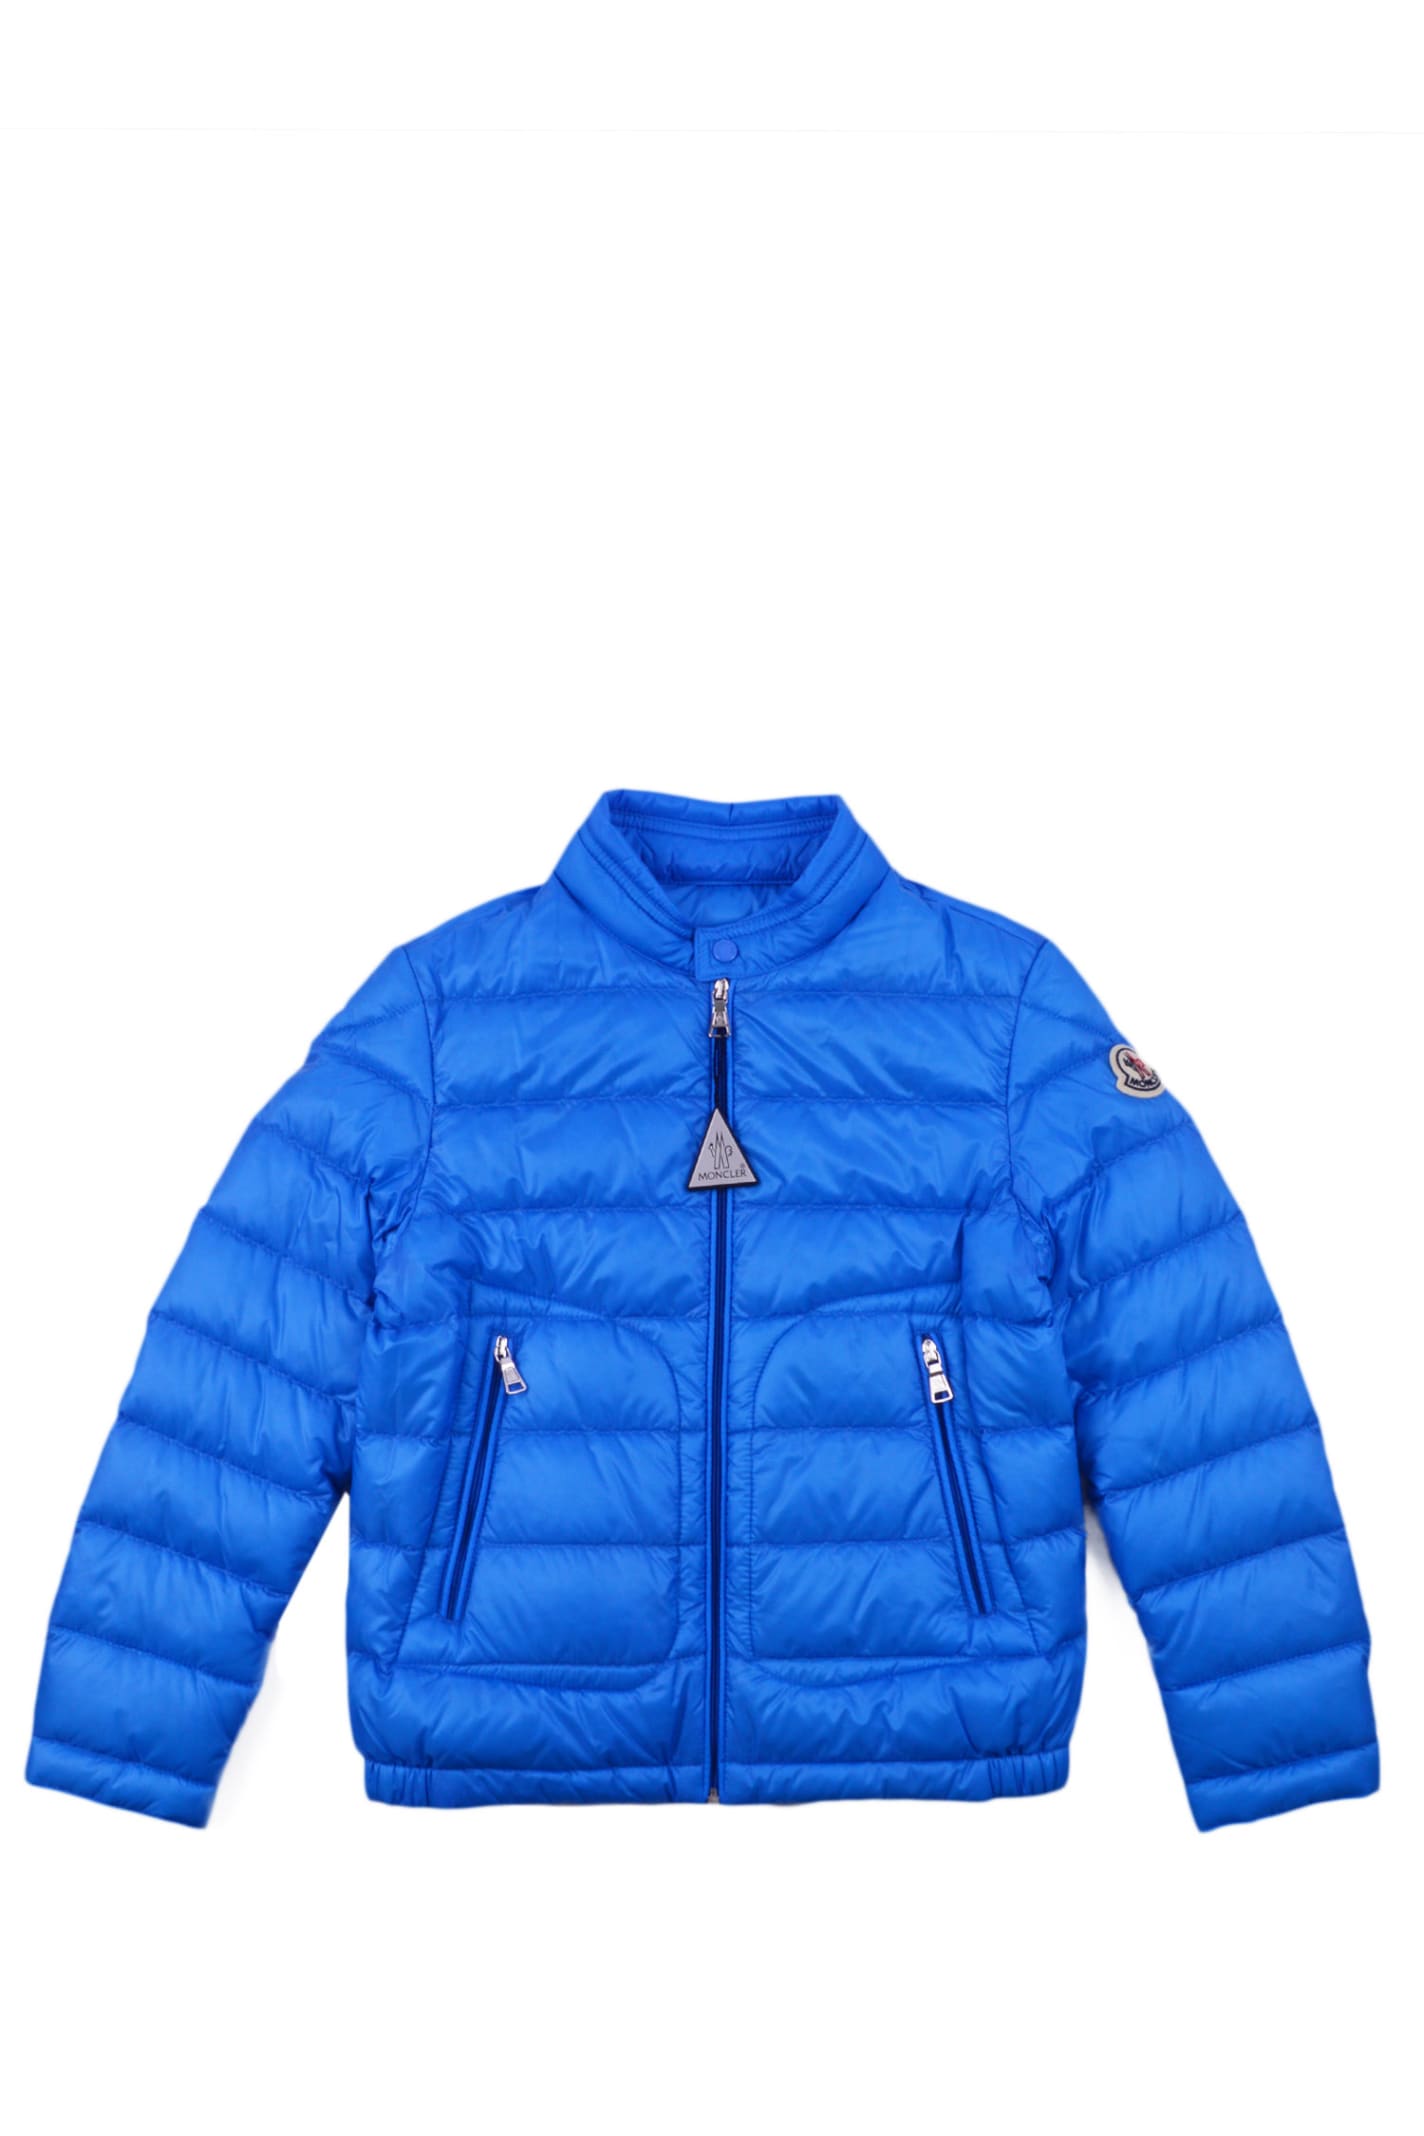 Moncler Kids' Nylon Down Jacket In Light Blue